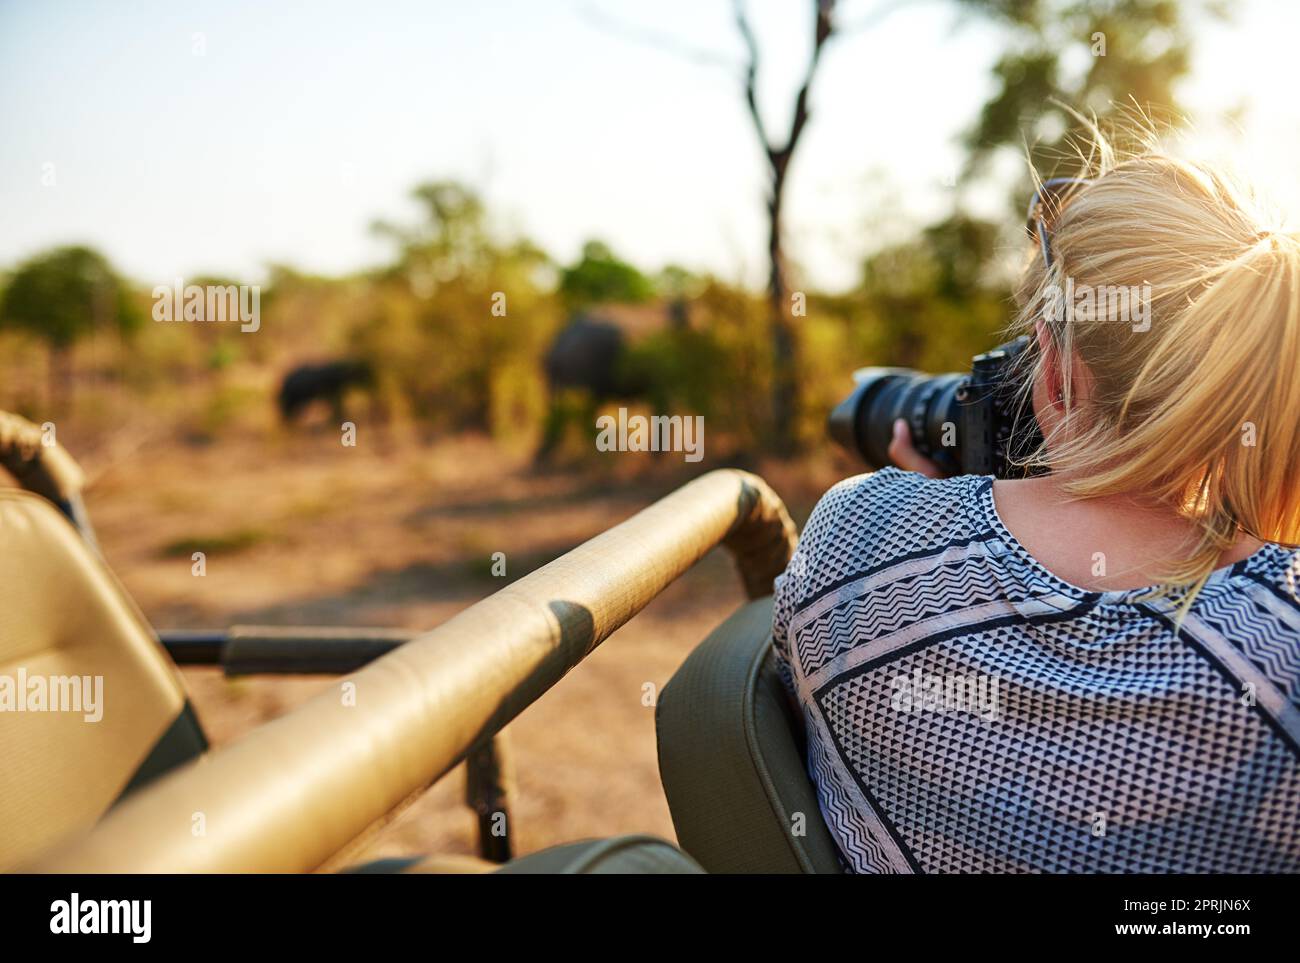 Shes bekommen einige tolle Aufnahmen. Eine weibliche Touristin fotografiert Elefanten während einer Safari. Stockfoto